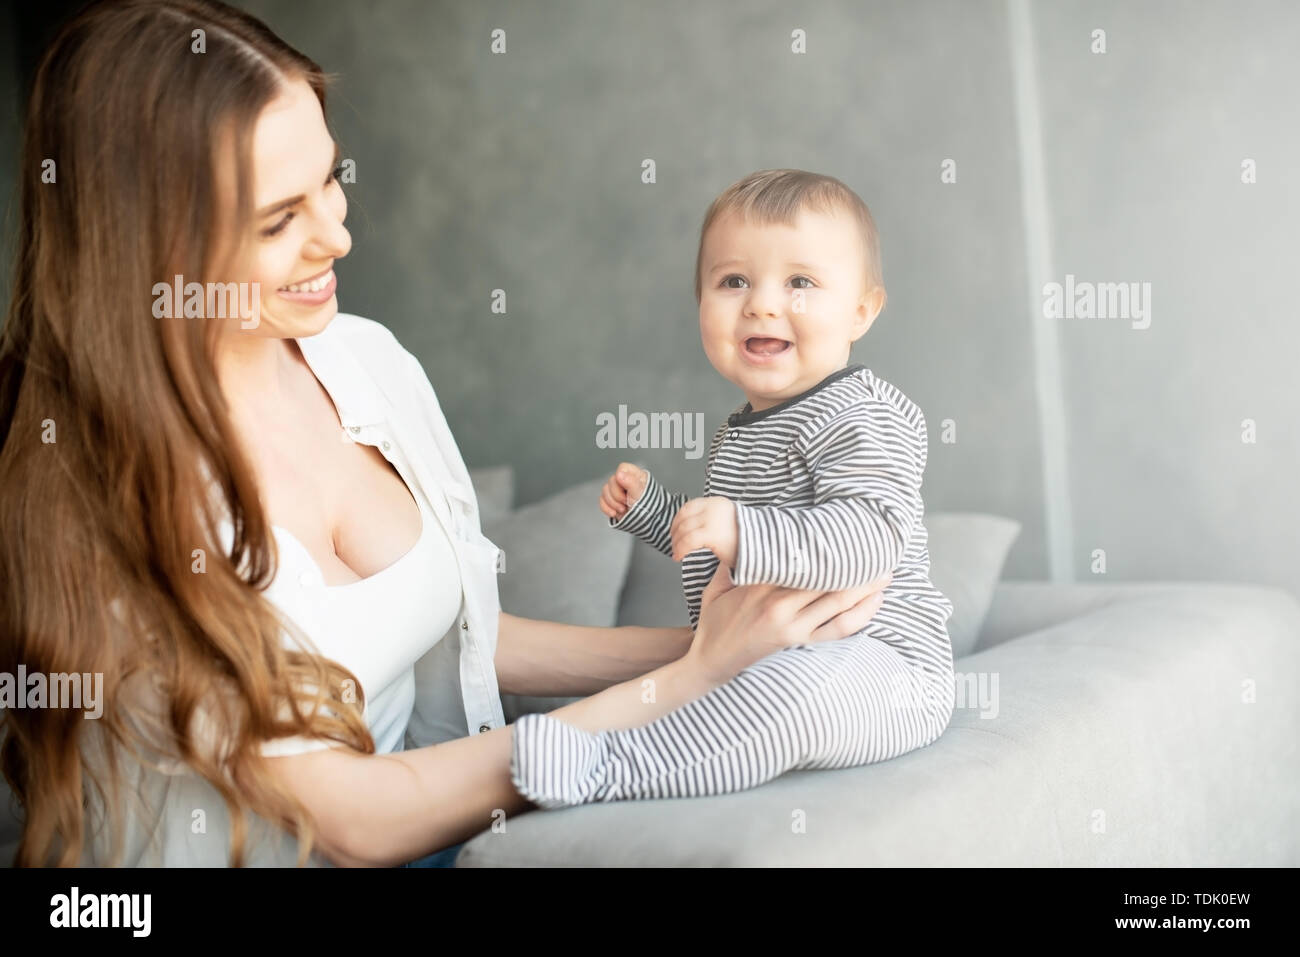 Kleines Kind lächelnd und mit Mama glücklich Stockfoto